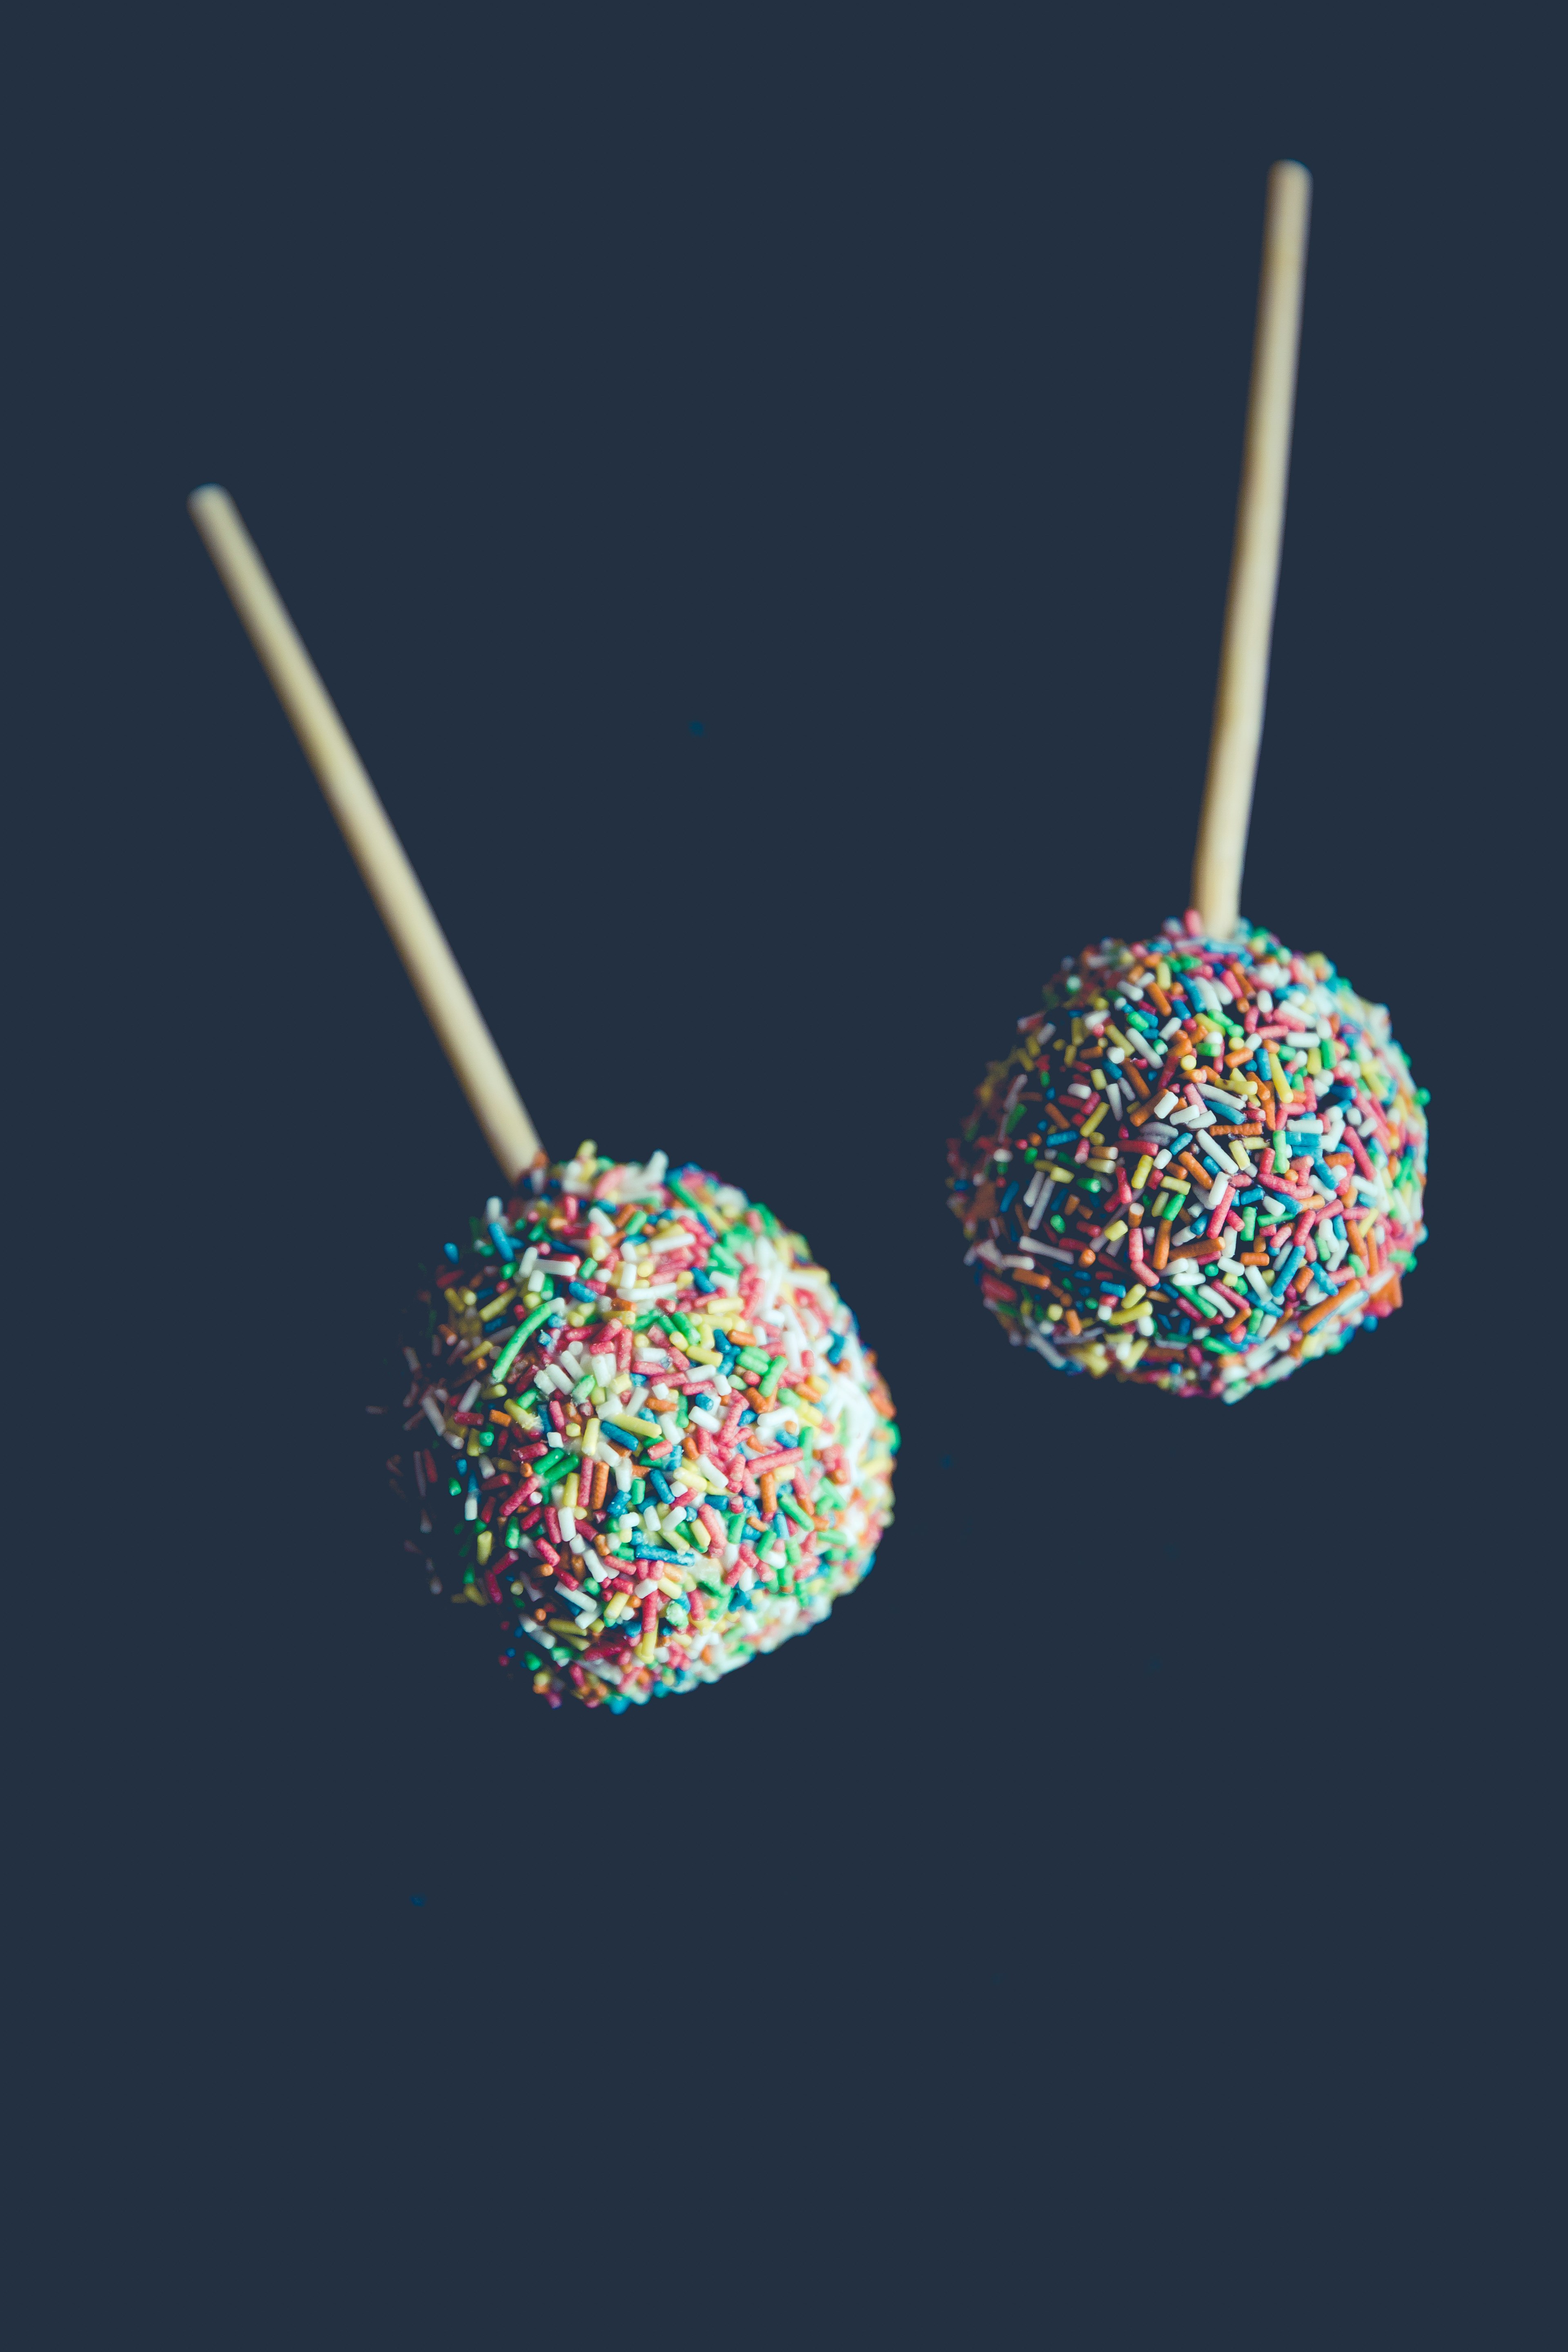 two sprinkled lollipops